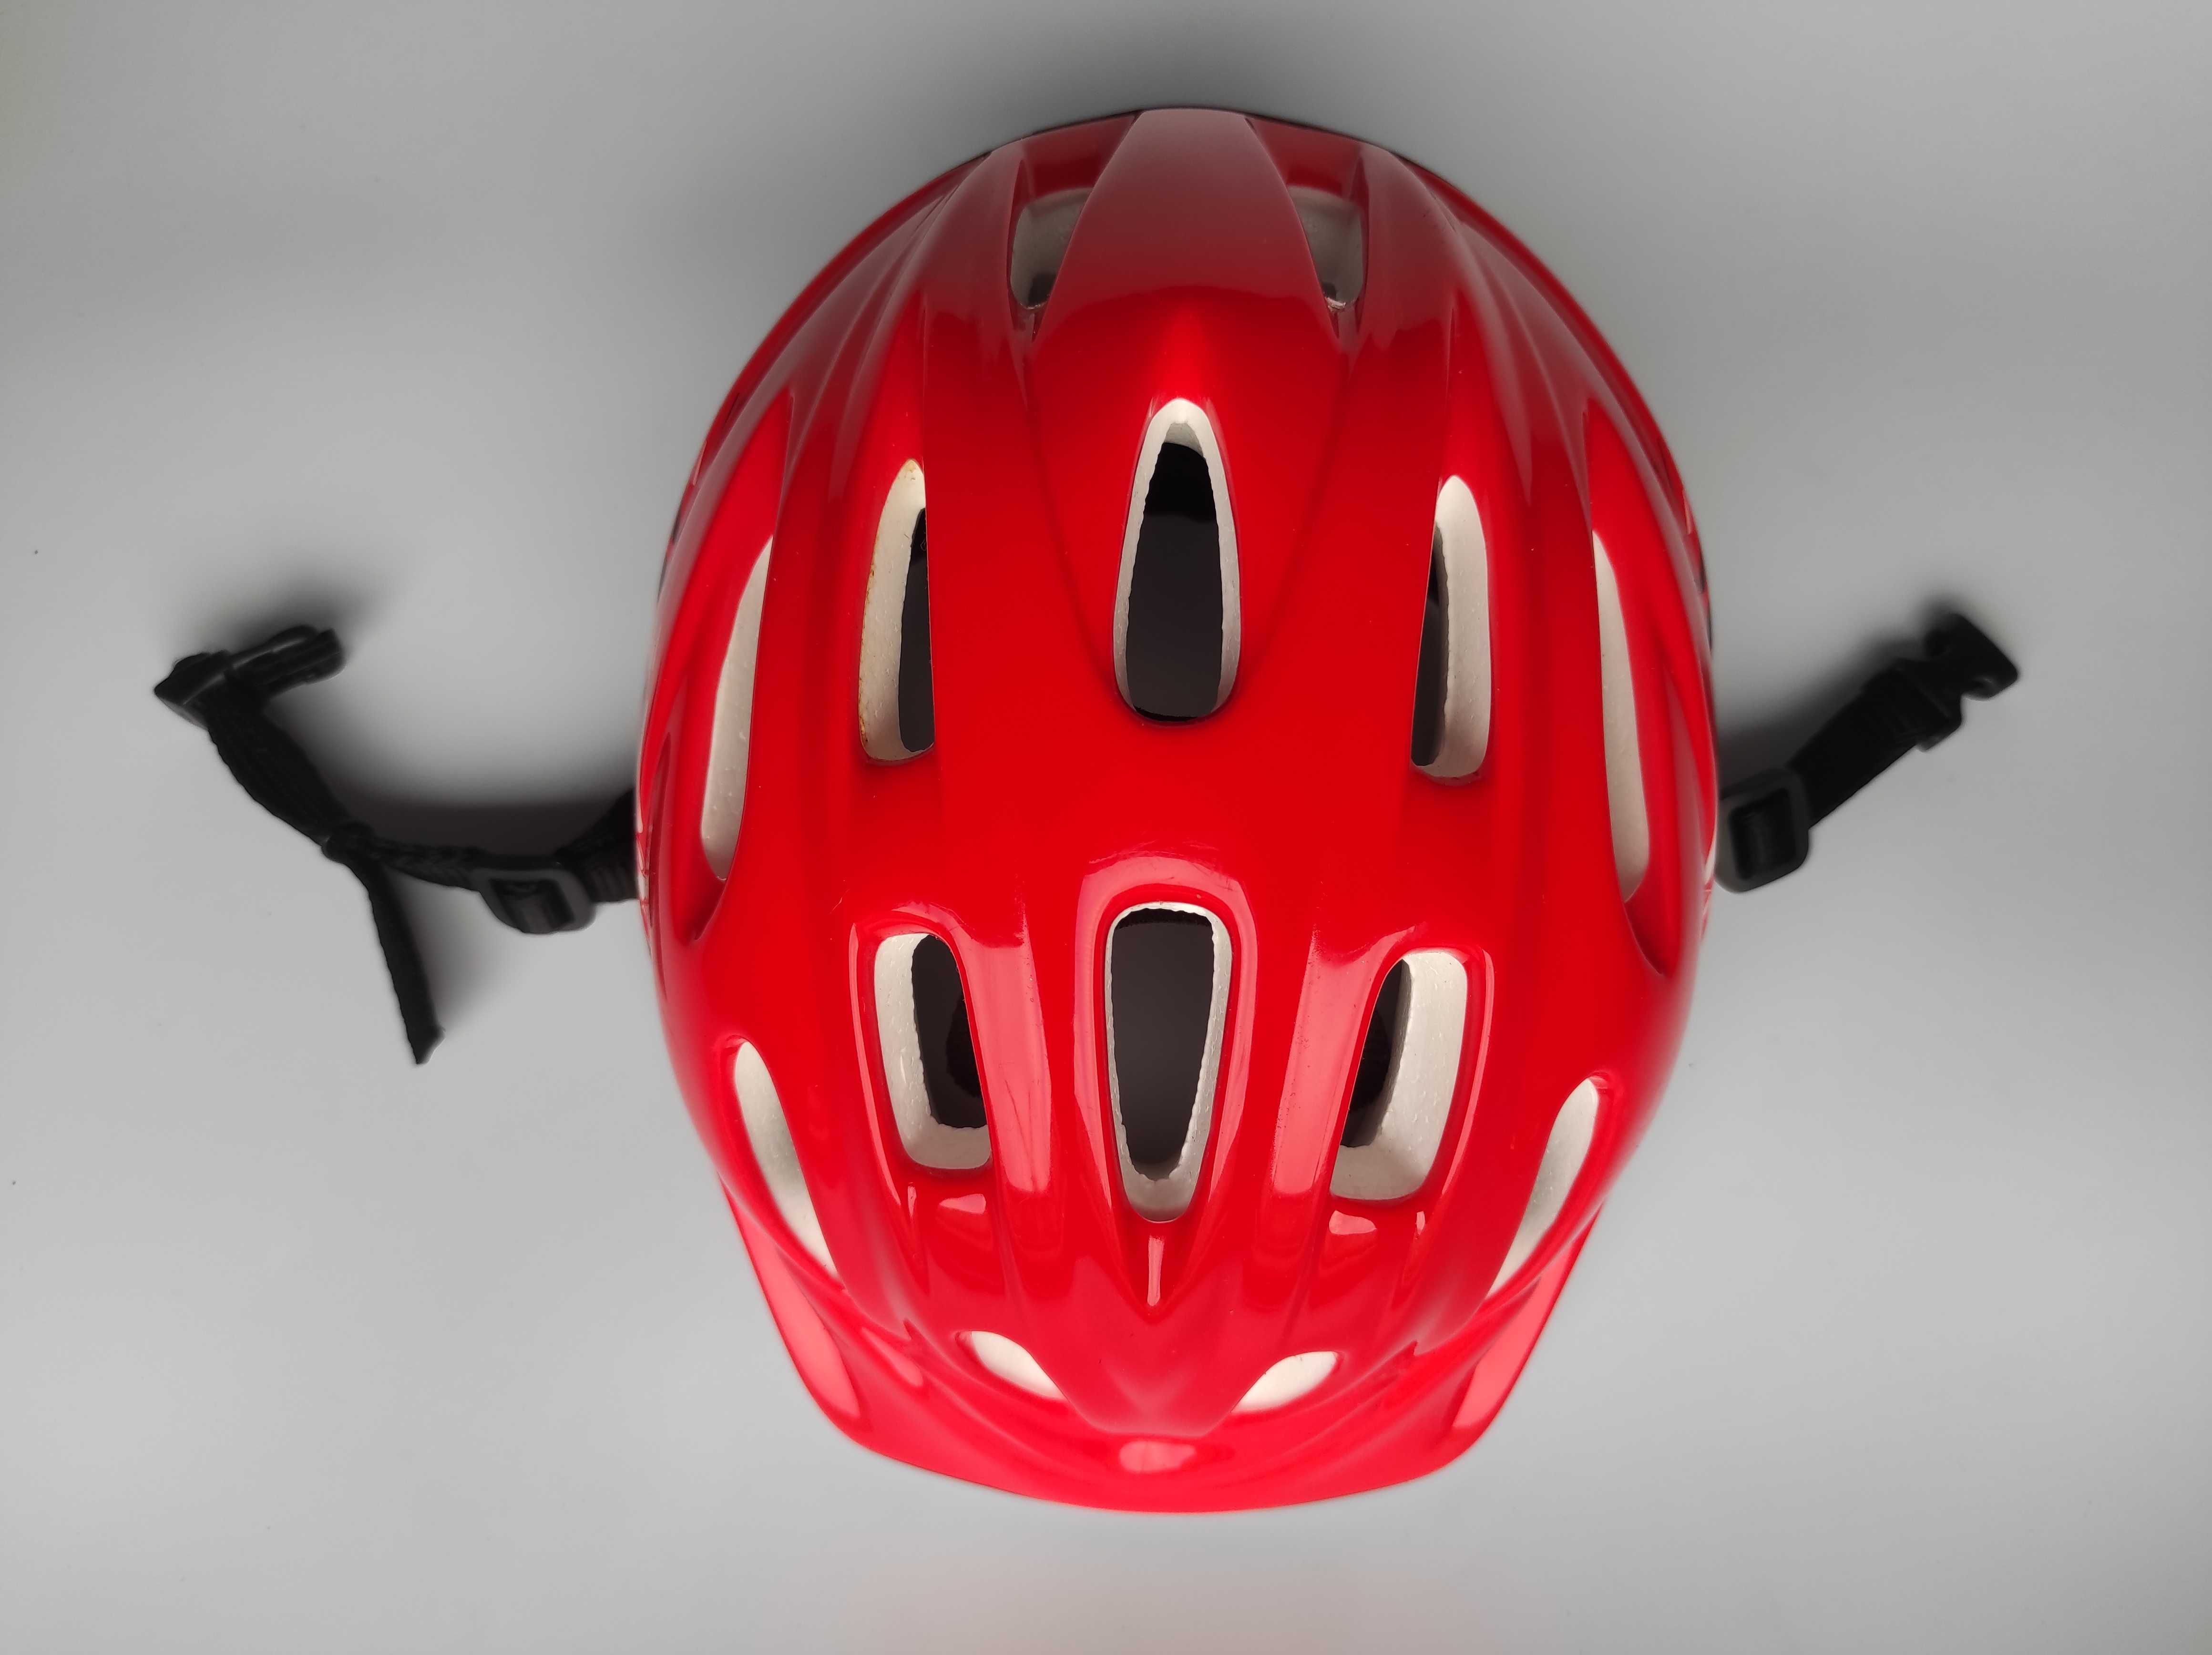 Детский защитный шлем COSMIC ROBO, размер XS 48-52см, велосипедный